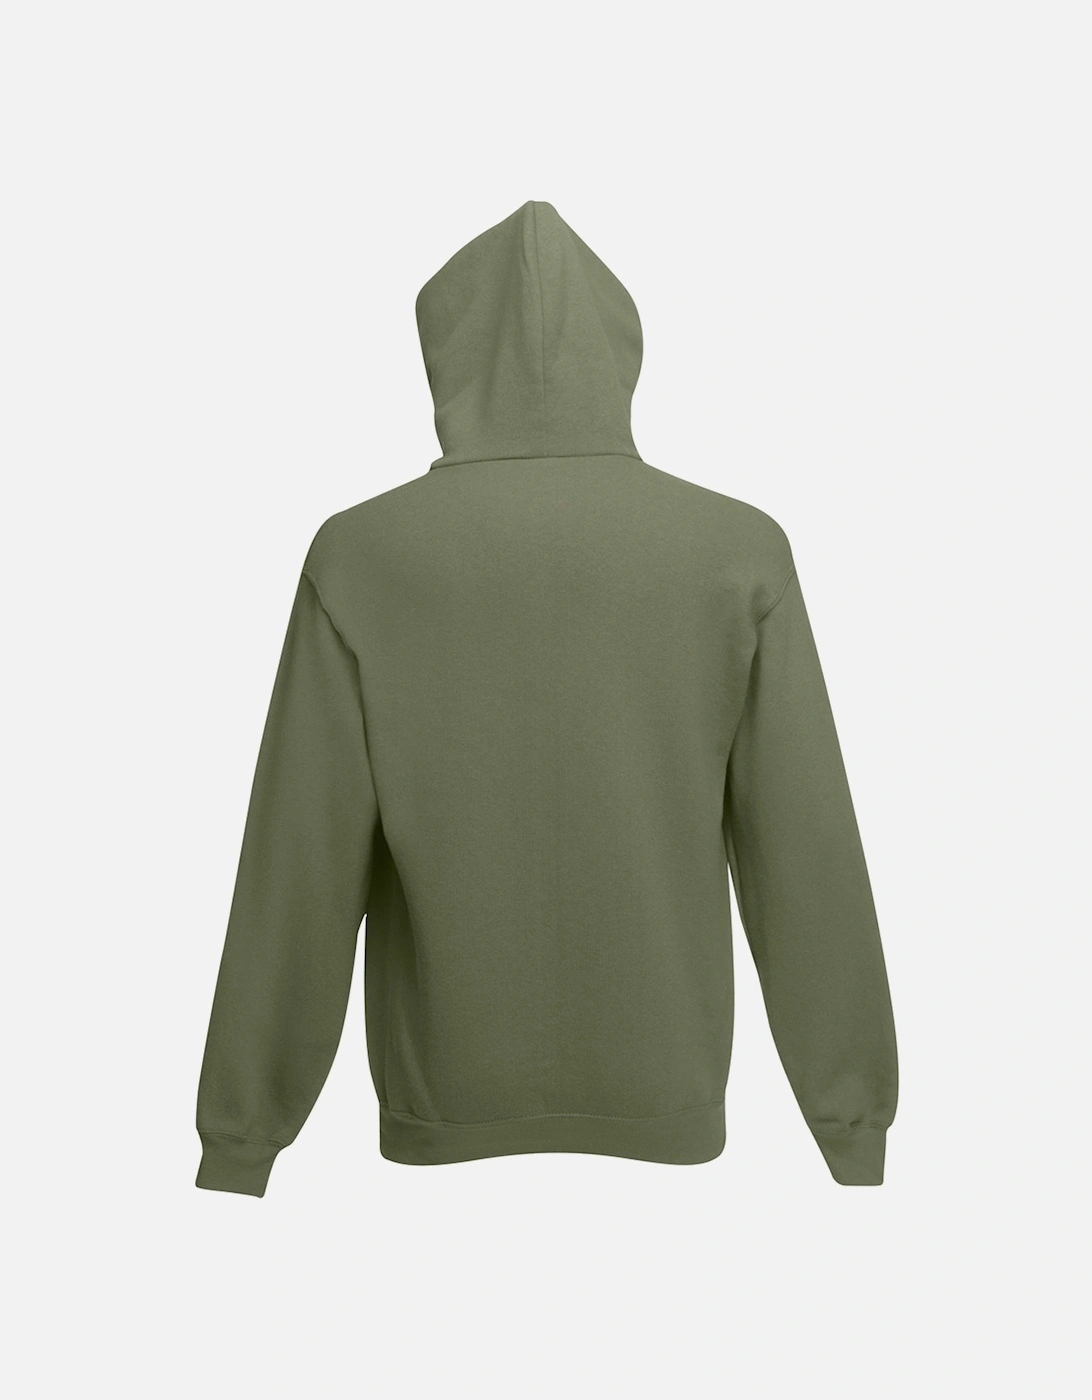 Mens Zip Through Hooded Sweatshirt / Hoodie